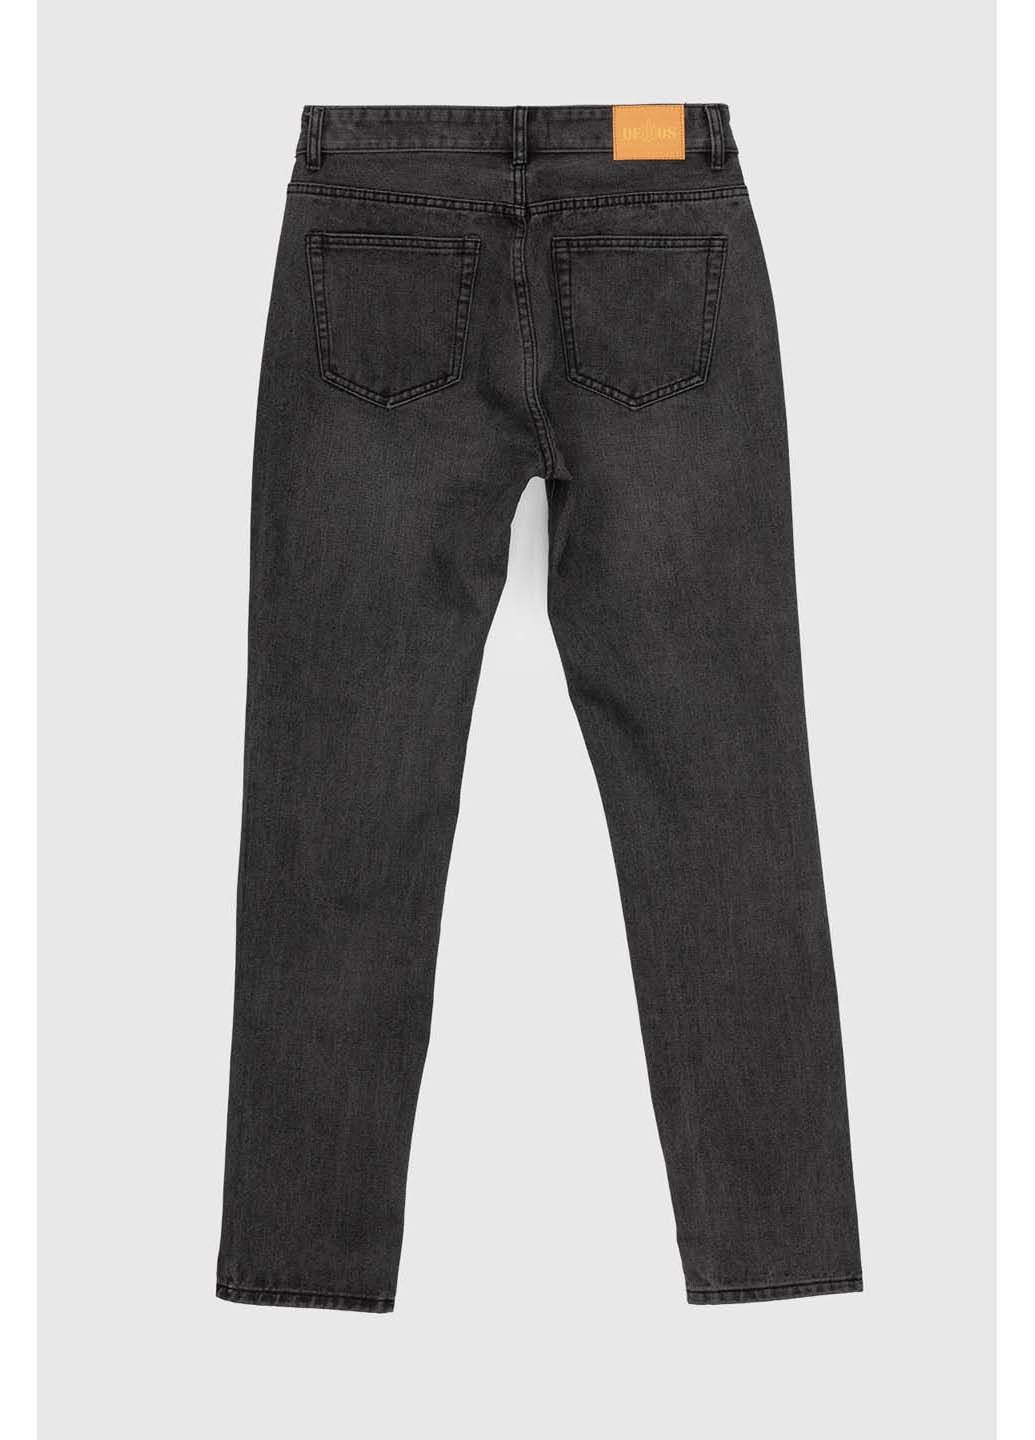 Темно-серые демисезонные джинсы Ren Tomogo